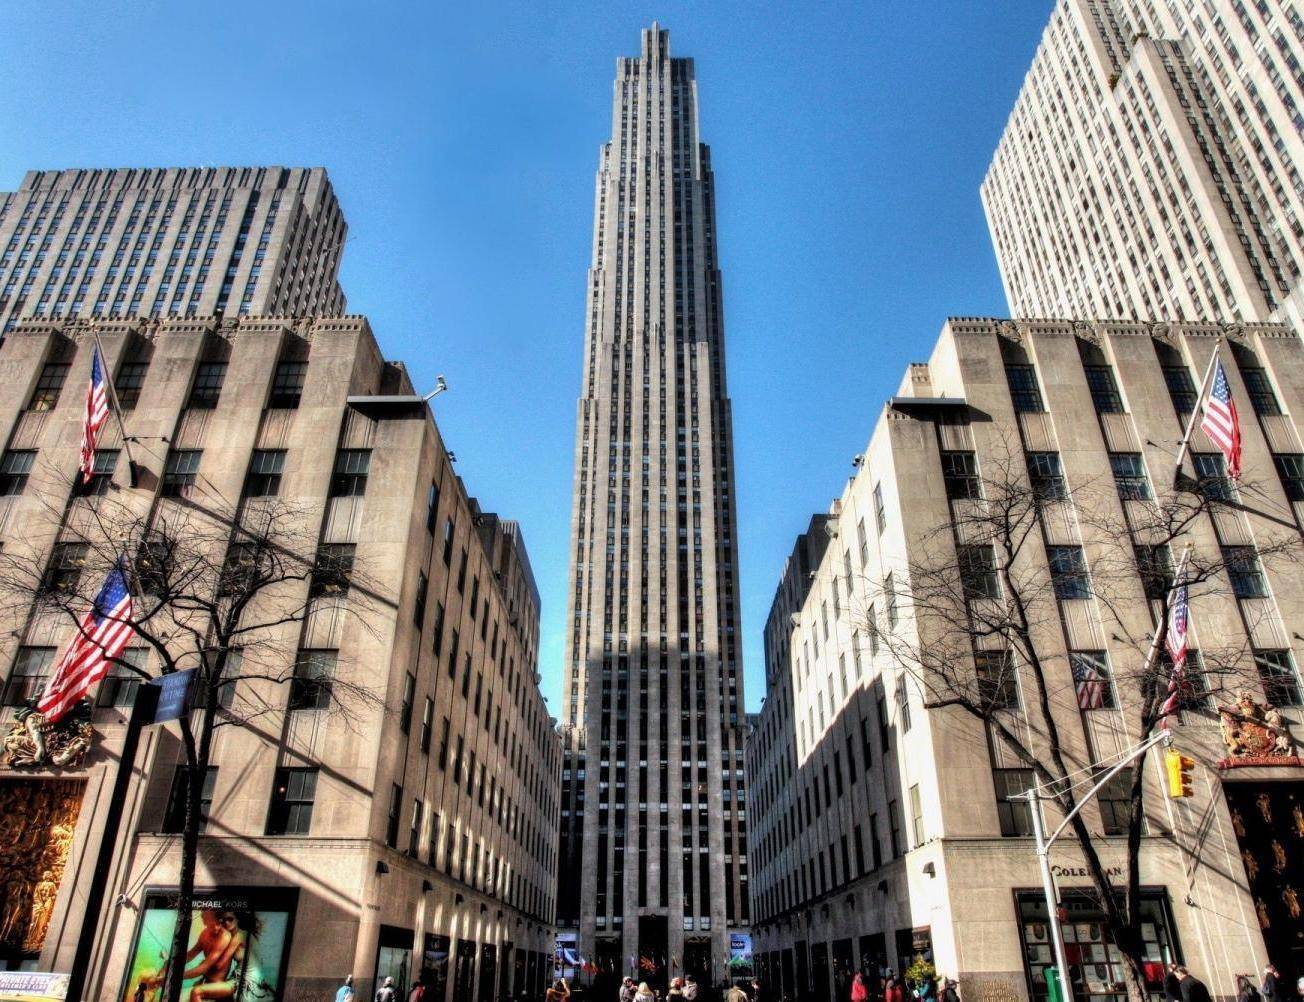 洛克菲勒中心主楼通用大厦高260米,共有70层,楼顶上是著名的观景平台